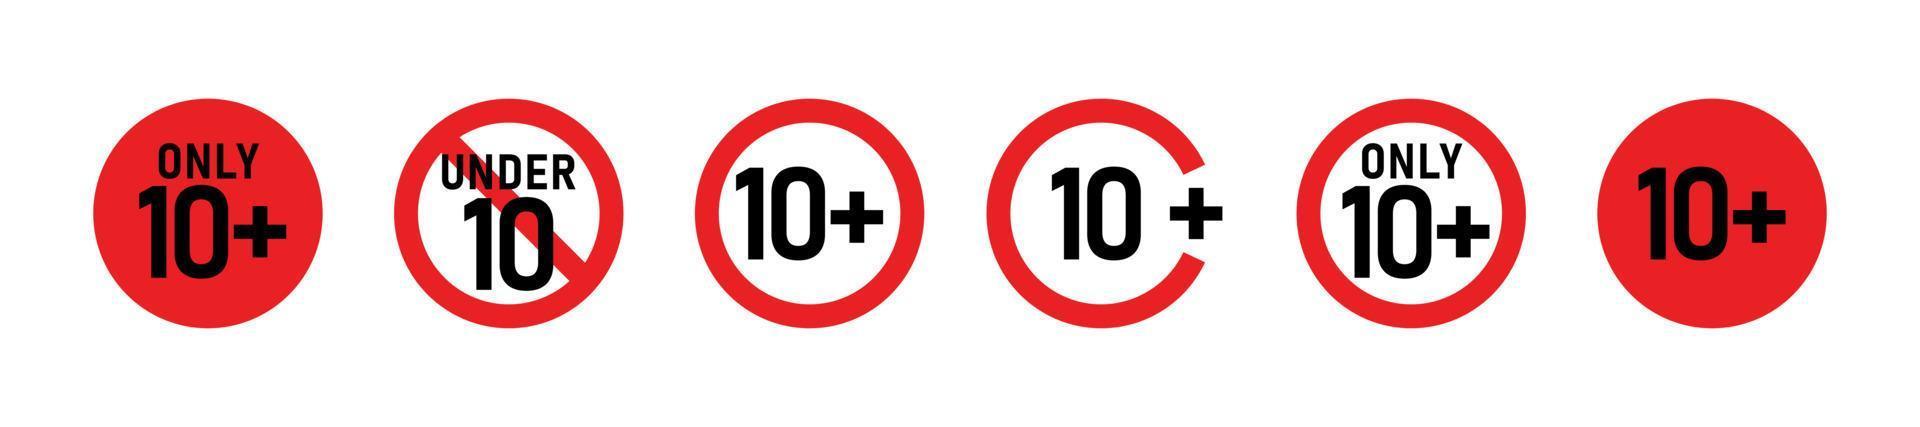 10 más conjunto de signos. diez. restricciones de edad, censura, control parental. icono de contenido, películas y juguetes. vector